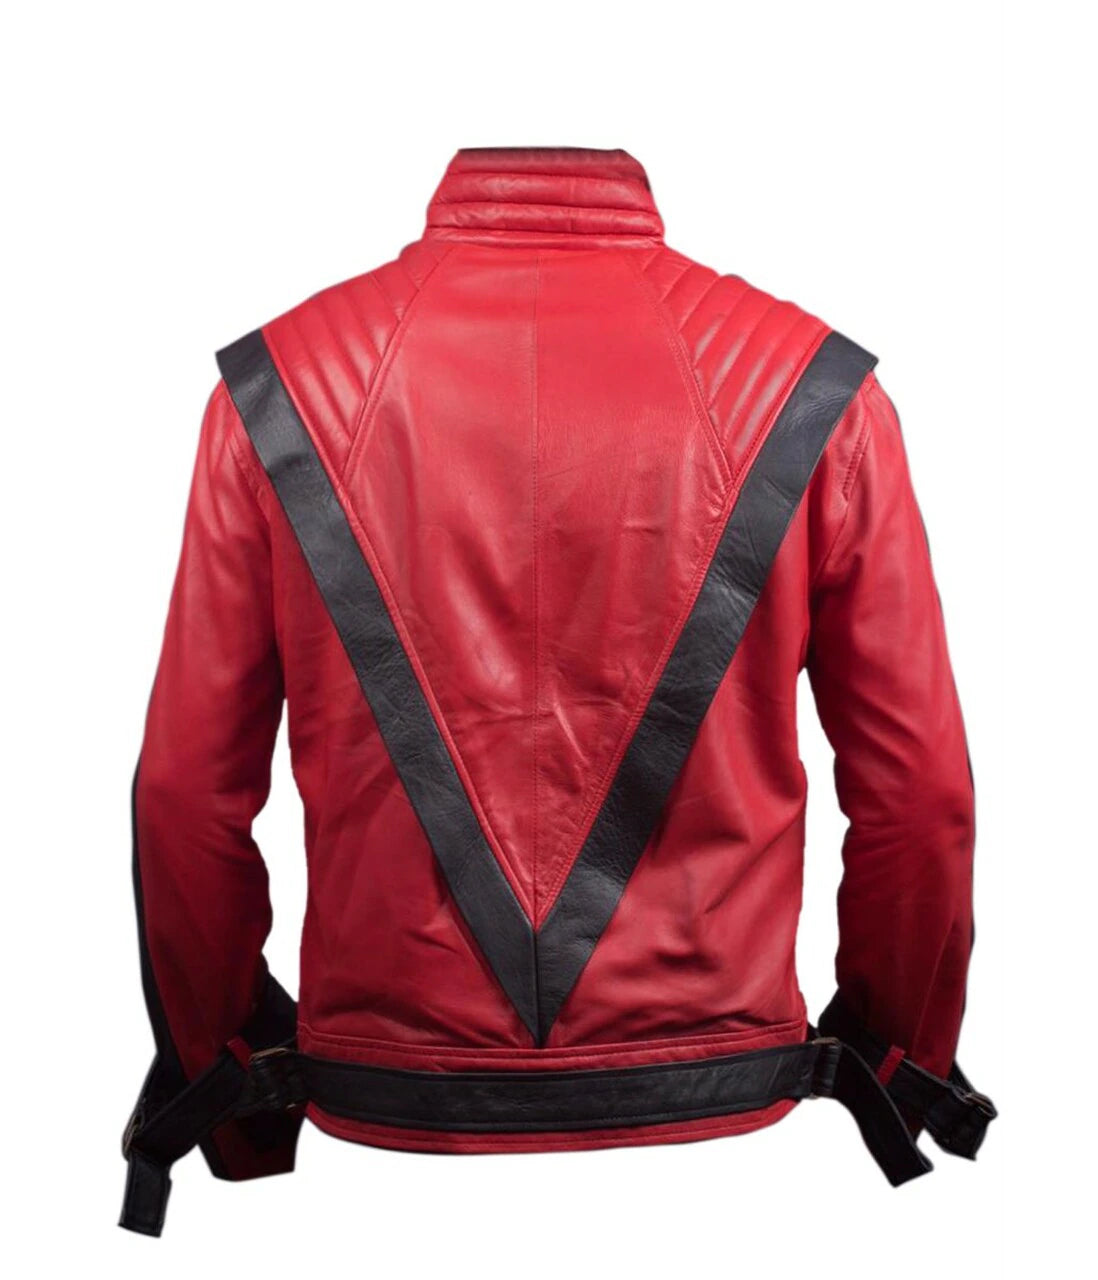 Michael Jackson jacket mens leather jacket for men red leather jacket men mj thriller jacket jacket mj fans designer jacket men celebrity jacket for men